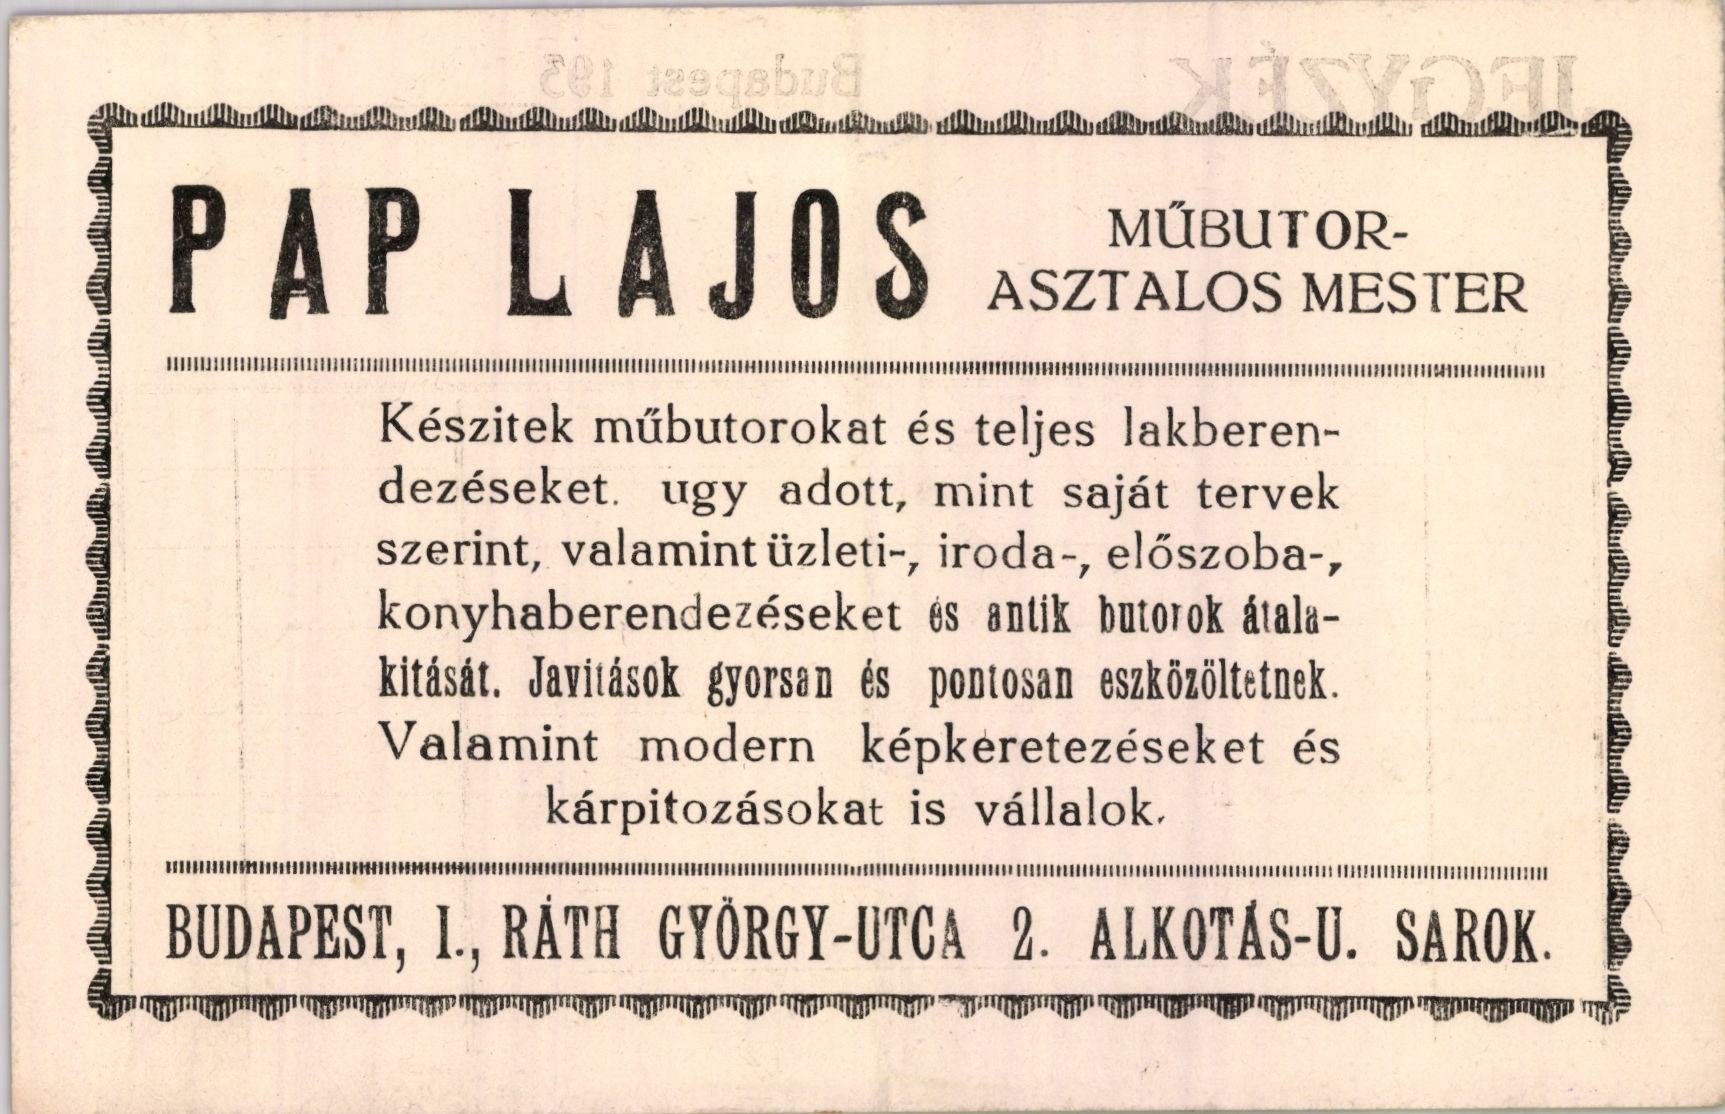 Pap Lajos műbutor-asztalos mester (Magyar Kereskedelmi és Vendéglátóipari Múzeum CC BY-NC-SA)